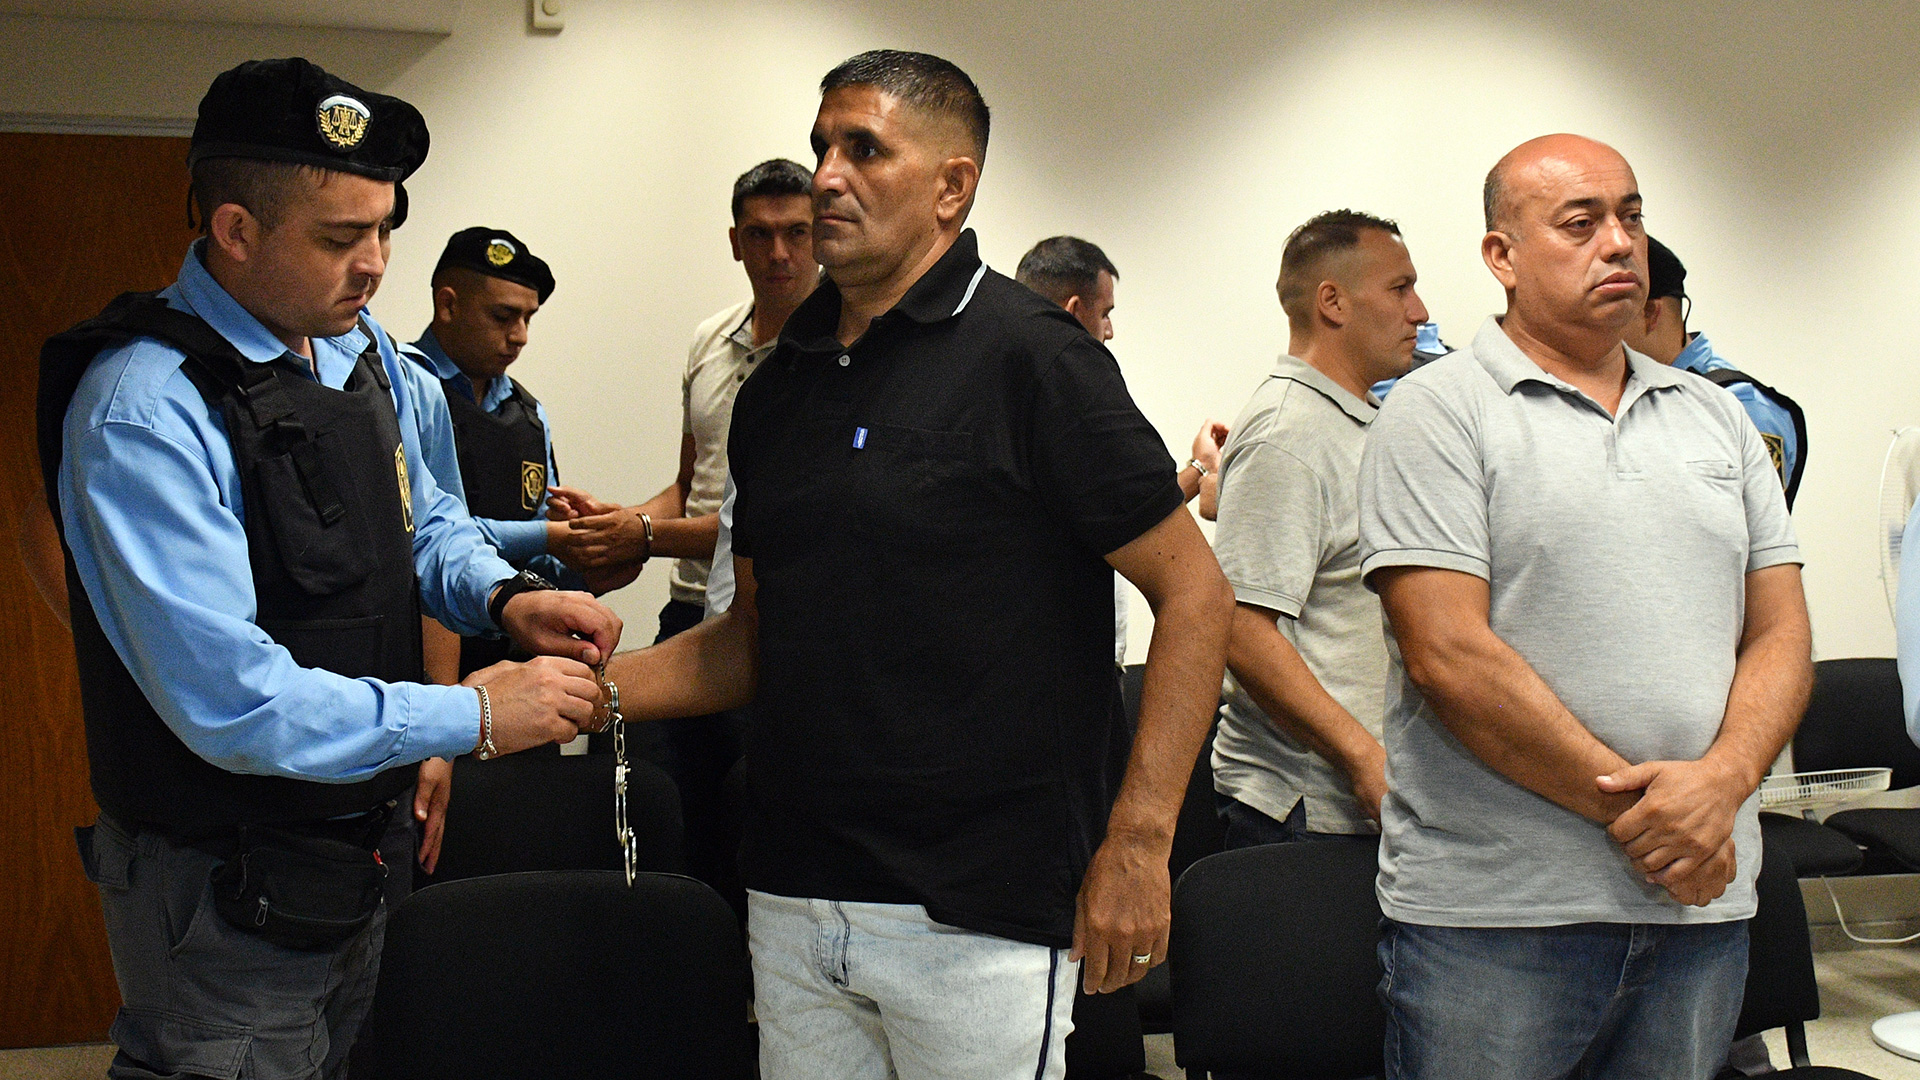 Algunos de acusados, en el banquillo, varios son comisarios y subcomisarios de la Policía de Córdoba (Télam)